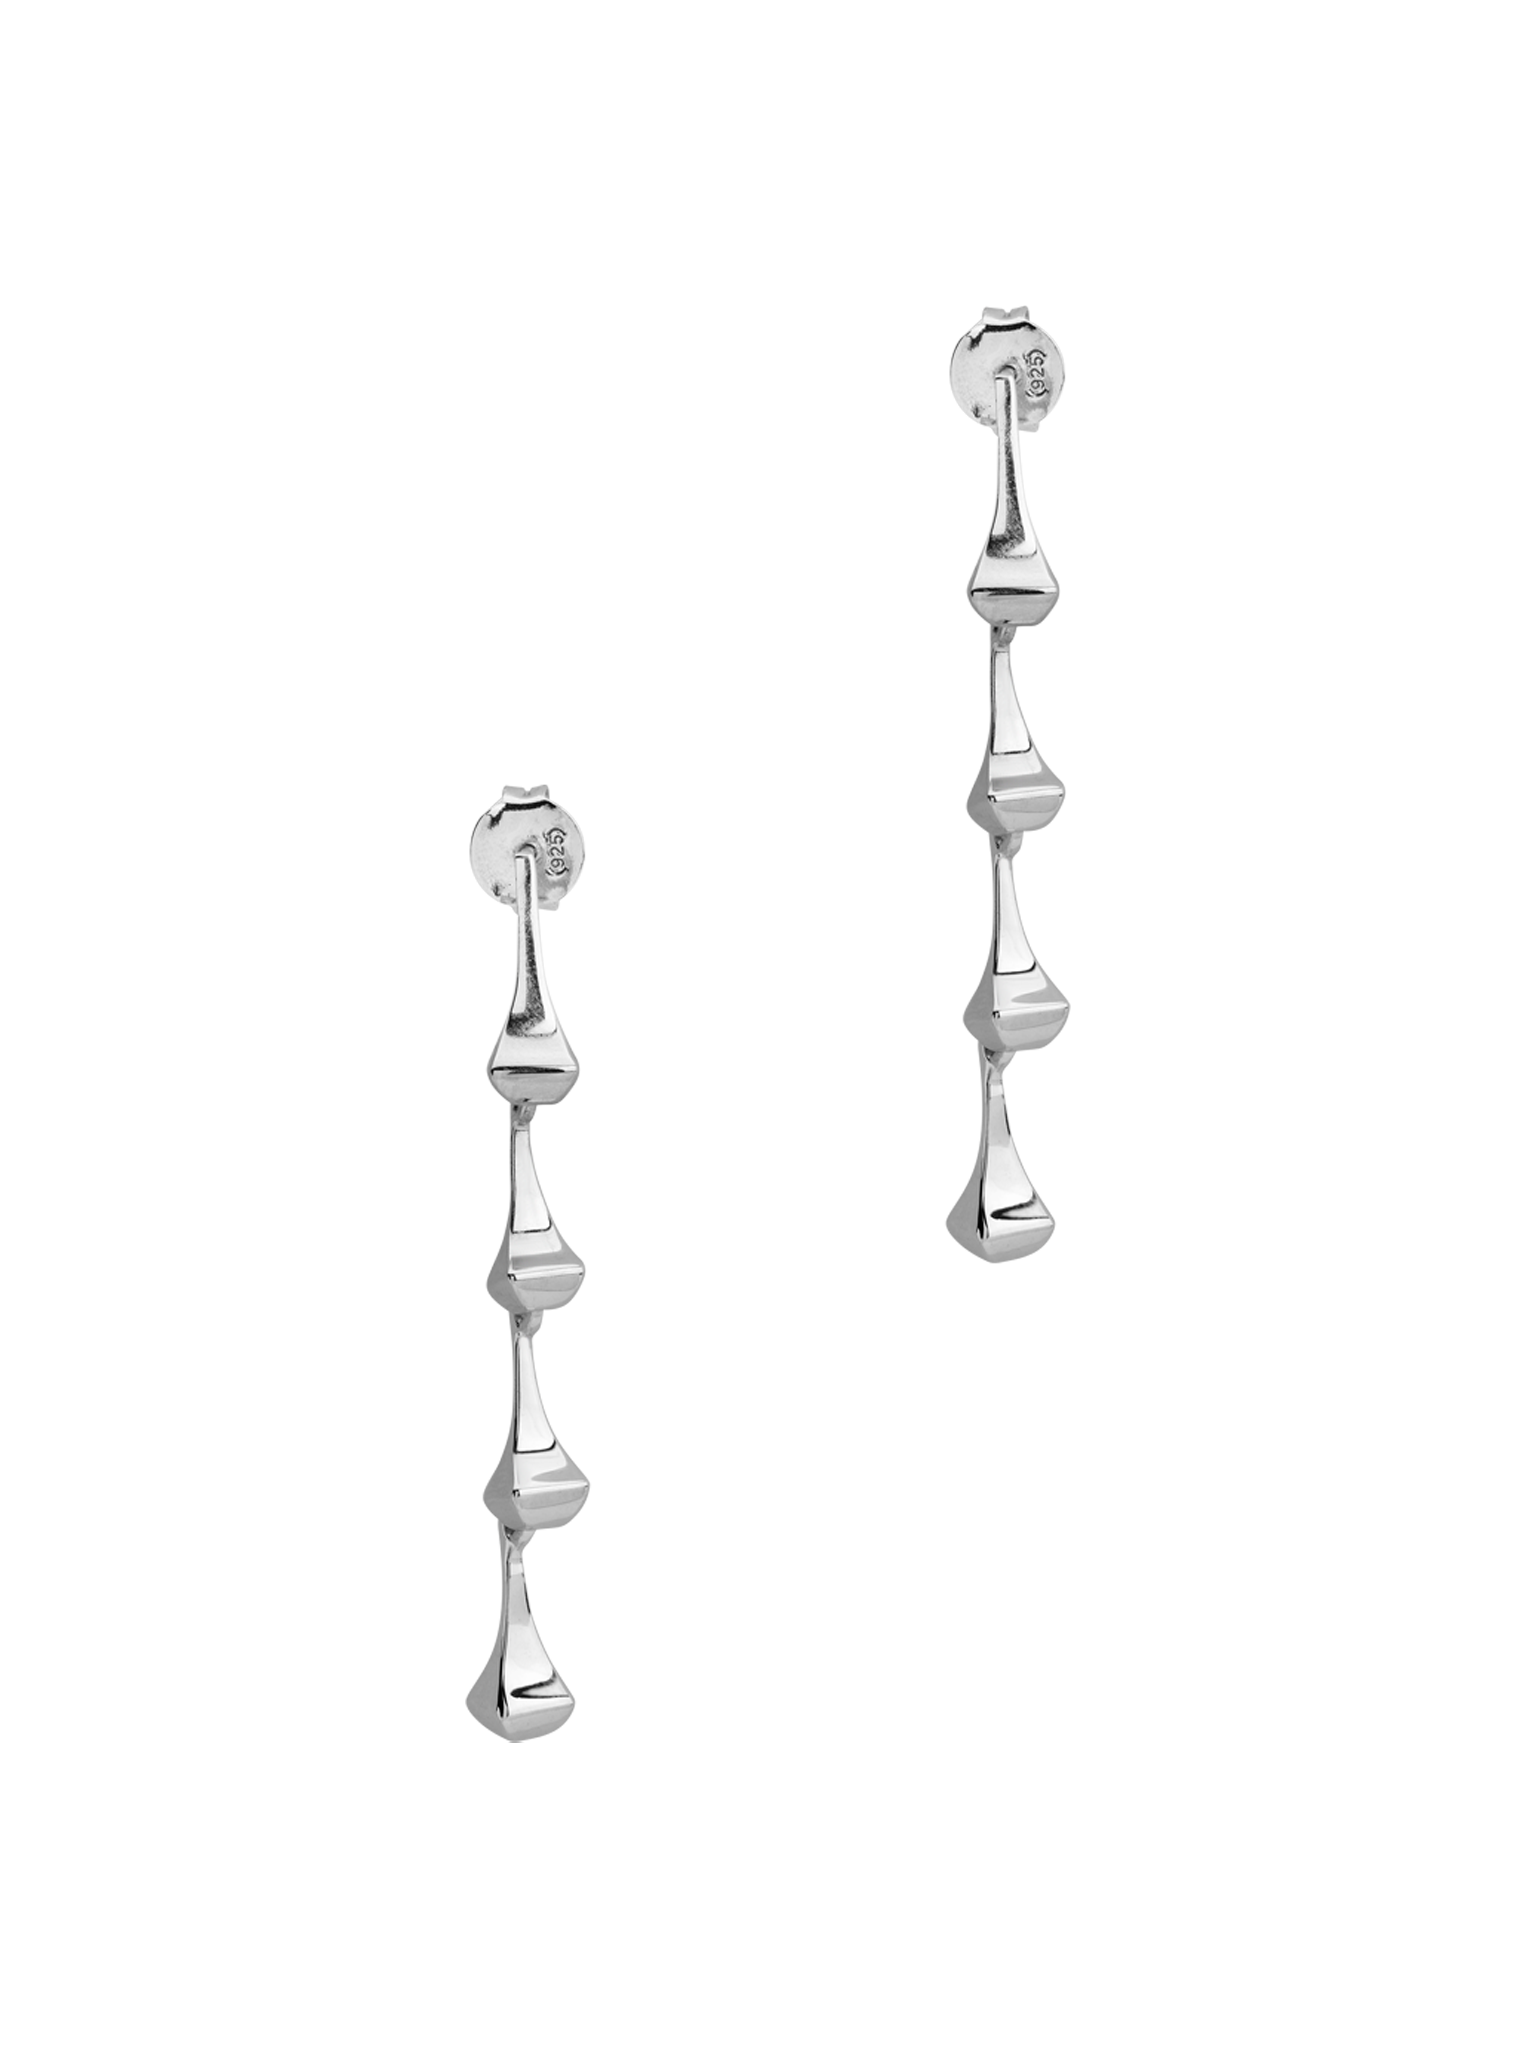 Amazon drop earrings silver